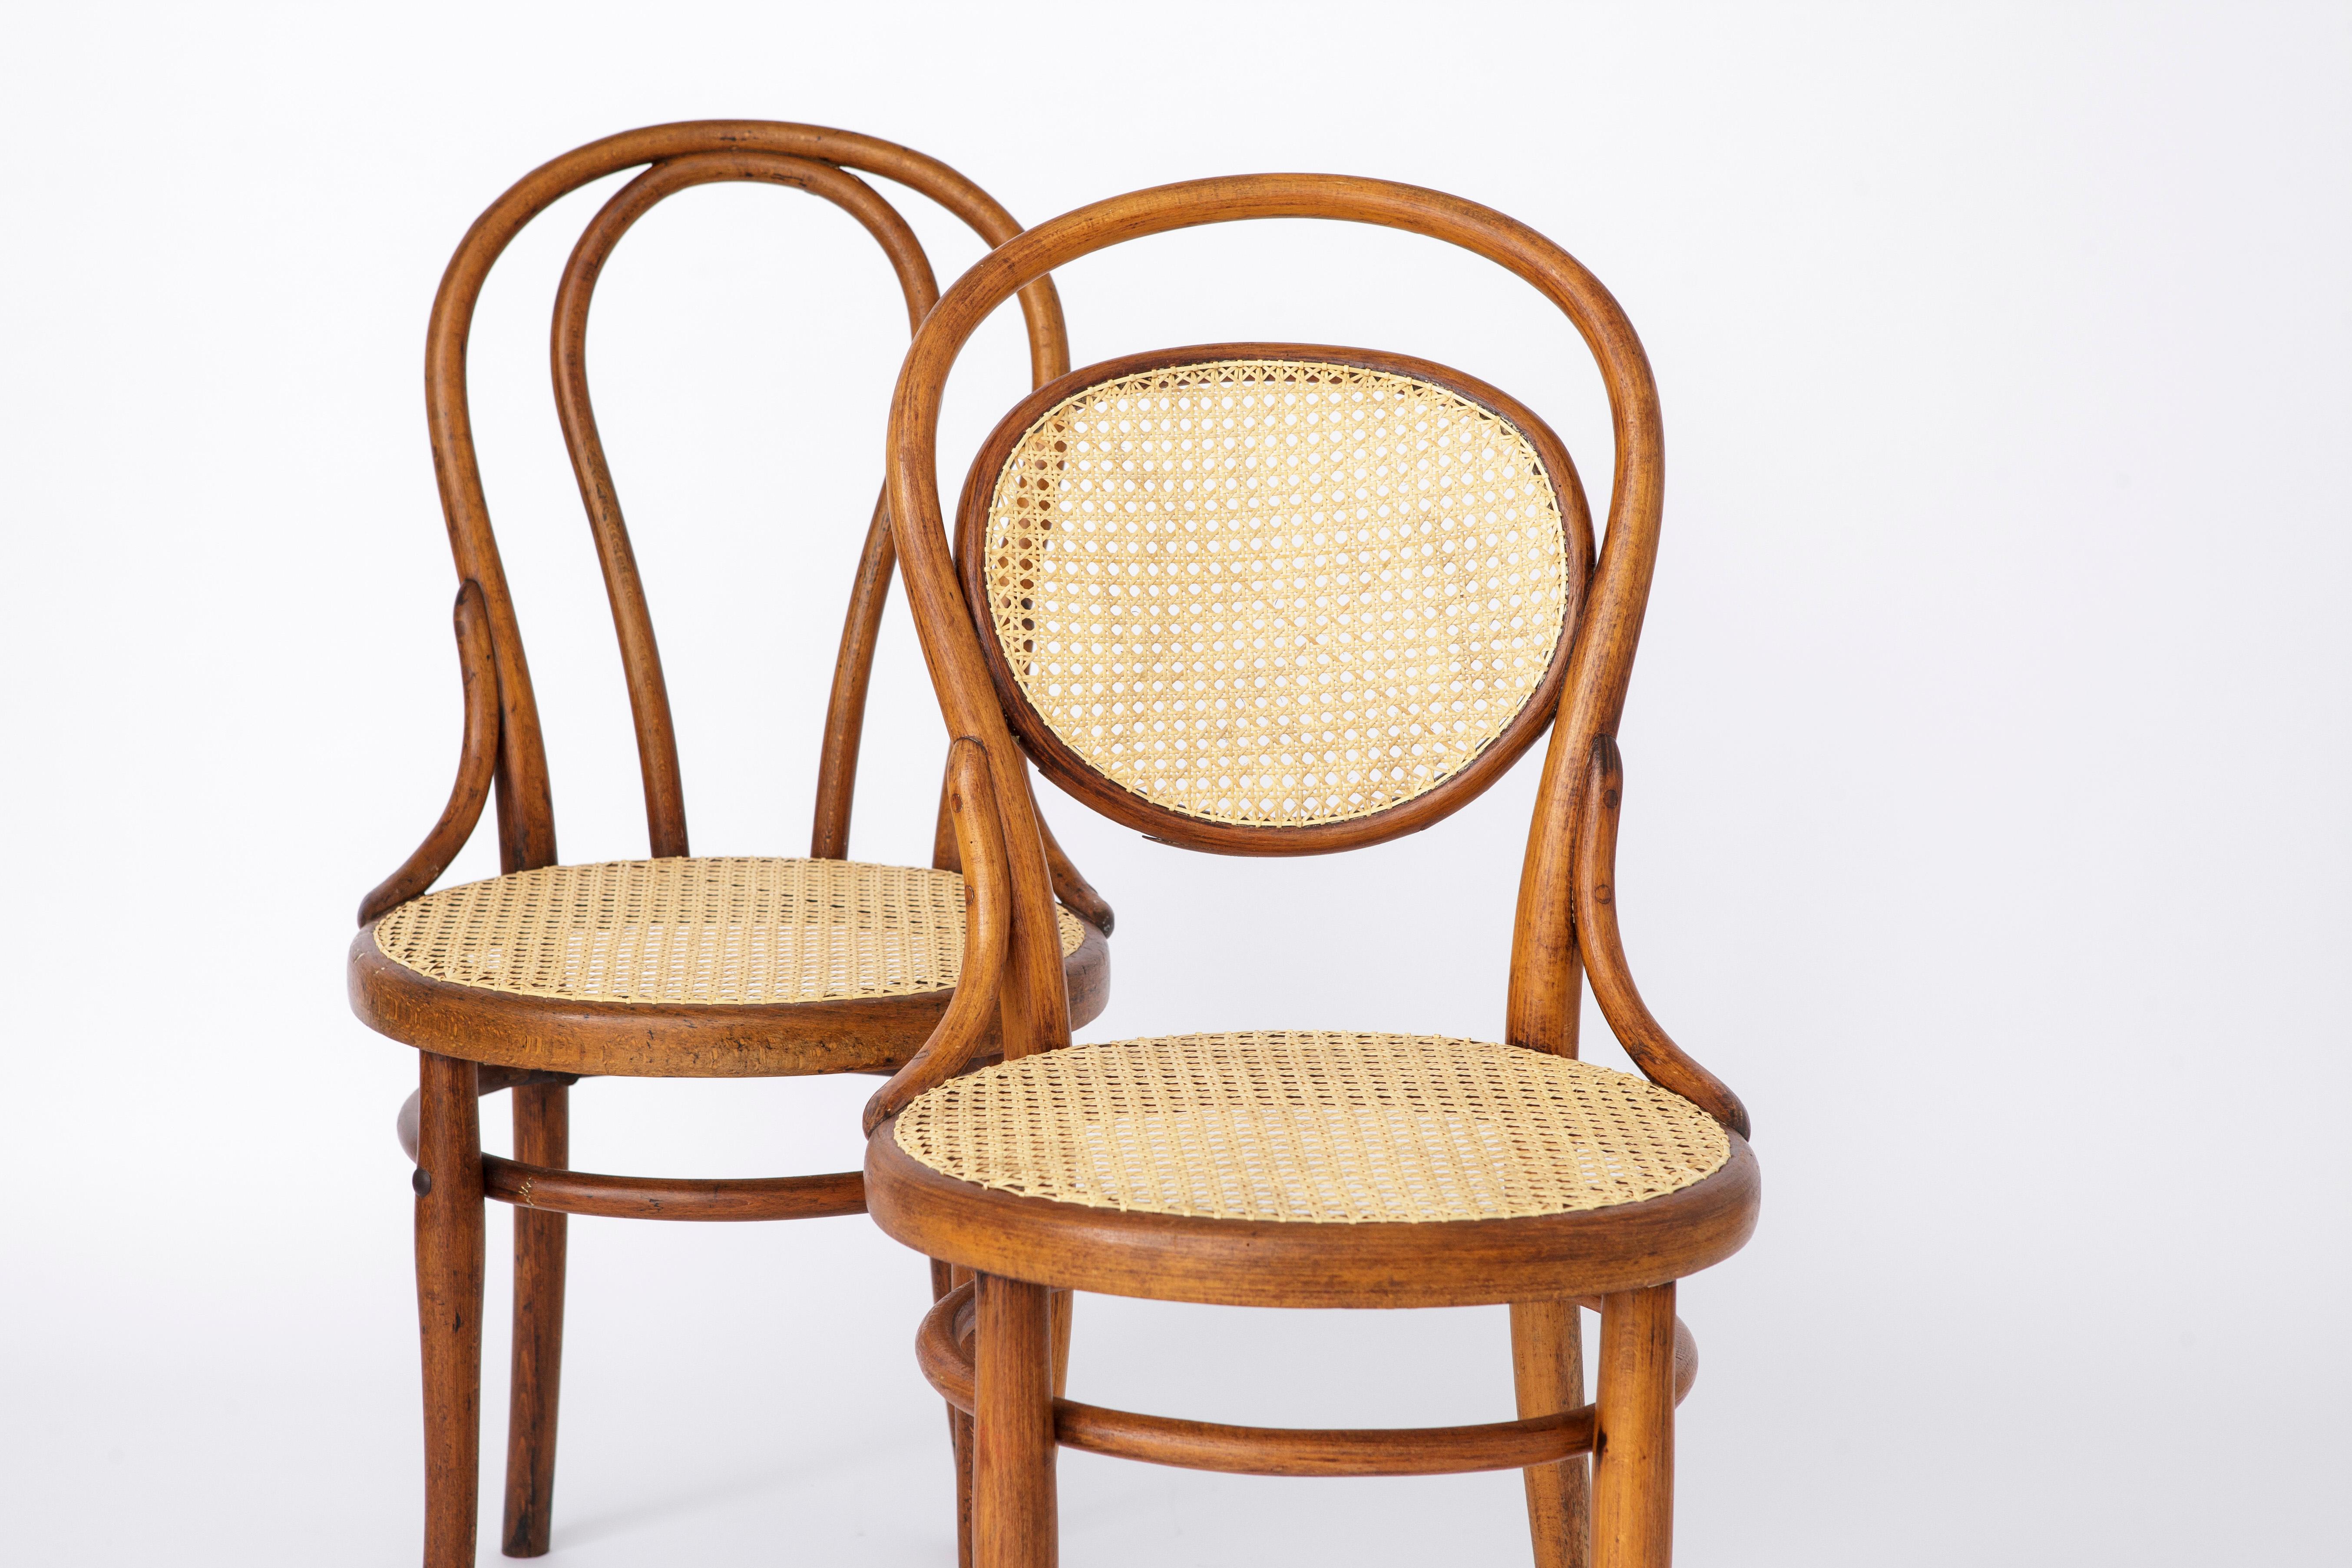 Paar Thonet Stühle, Modell Nr. 18 + Modell Nr. 215. 
Entwurf von Michael Thonet aus dem Jahr 1859. 
Produktionszeitraum ca. 1920-1950er Jahre. 

Stabiler Bugholzstuhl aus Buche  Rahmen. Aufgearbeitet und geölt. 
Erneuerter Sitz aus dänischem